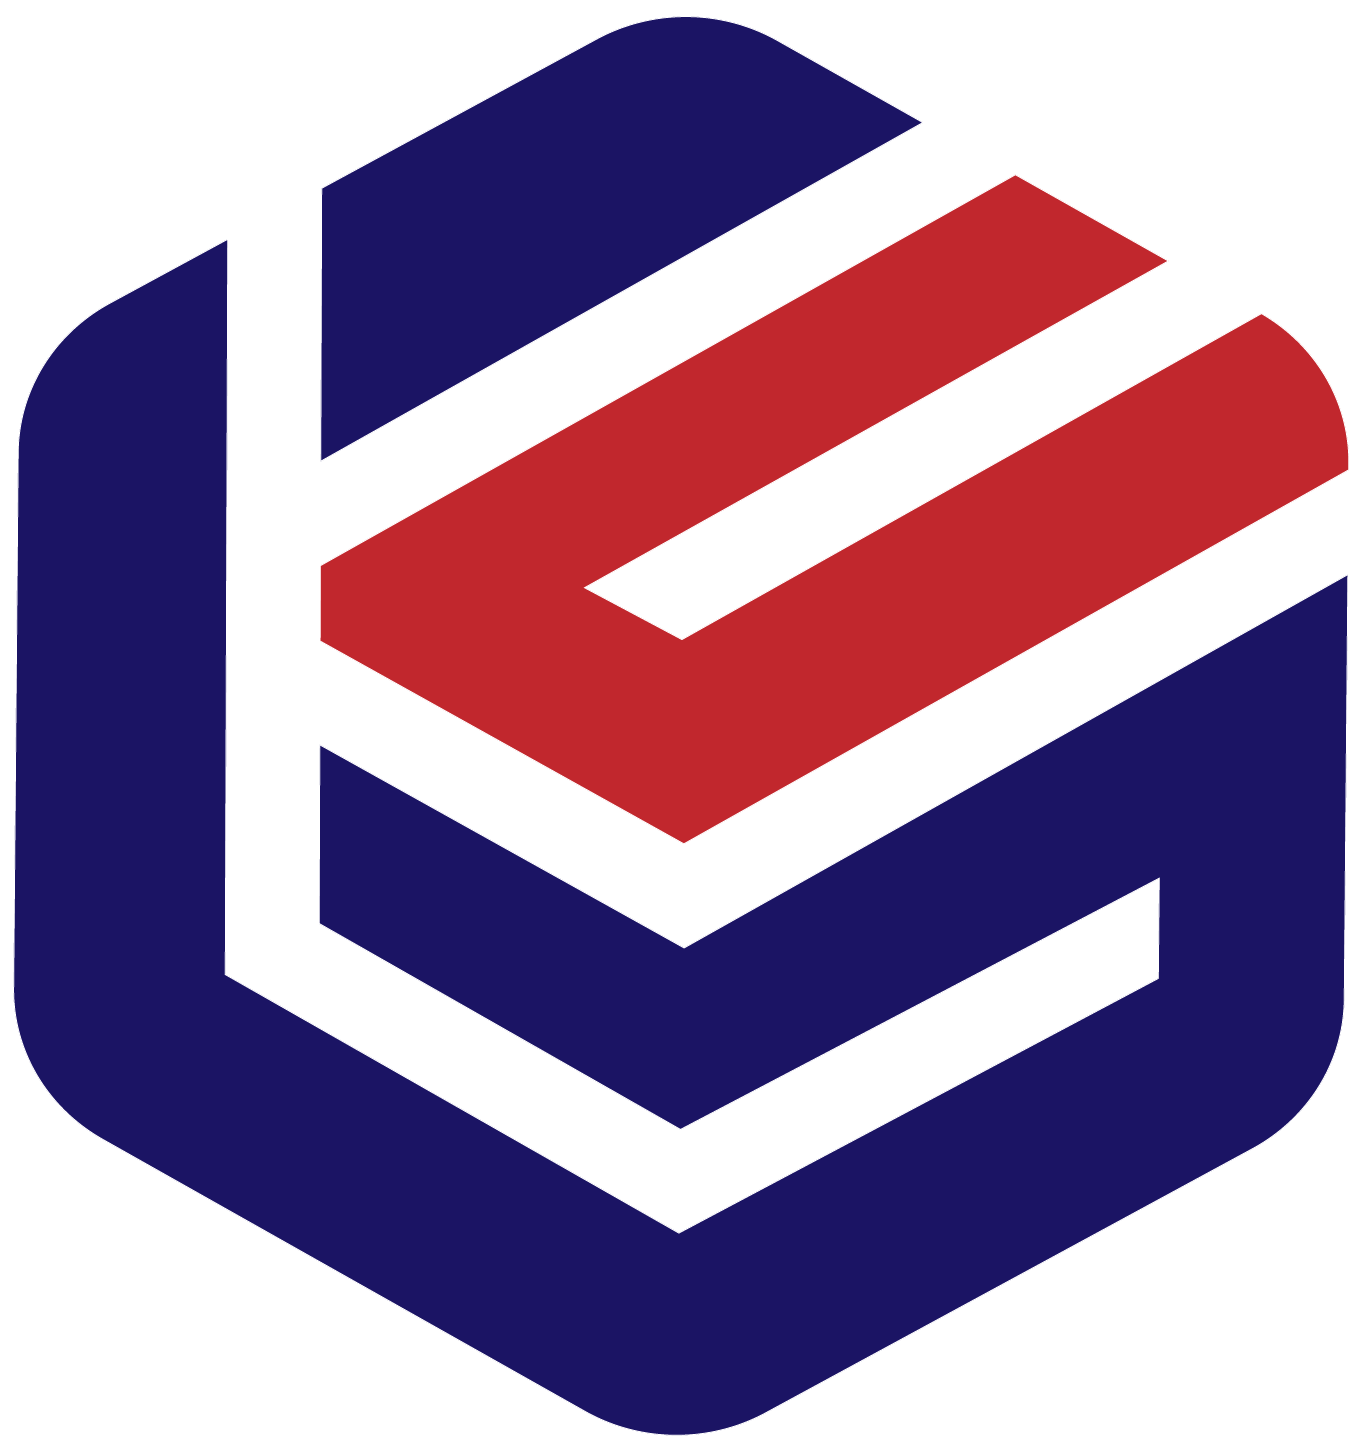 ETK Logo